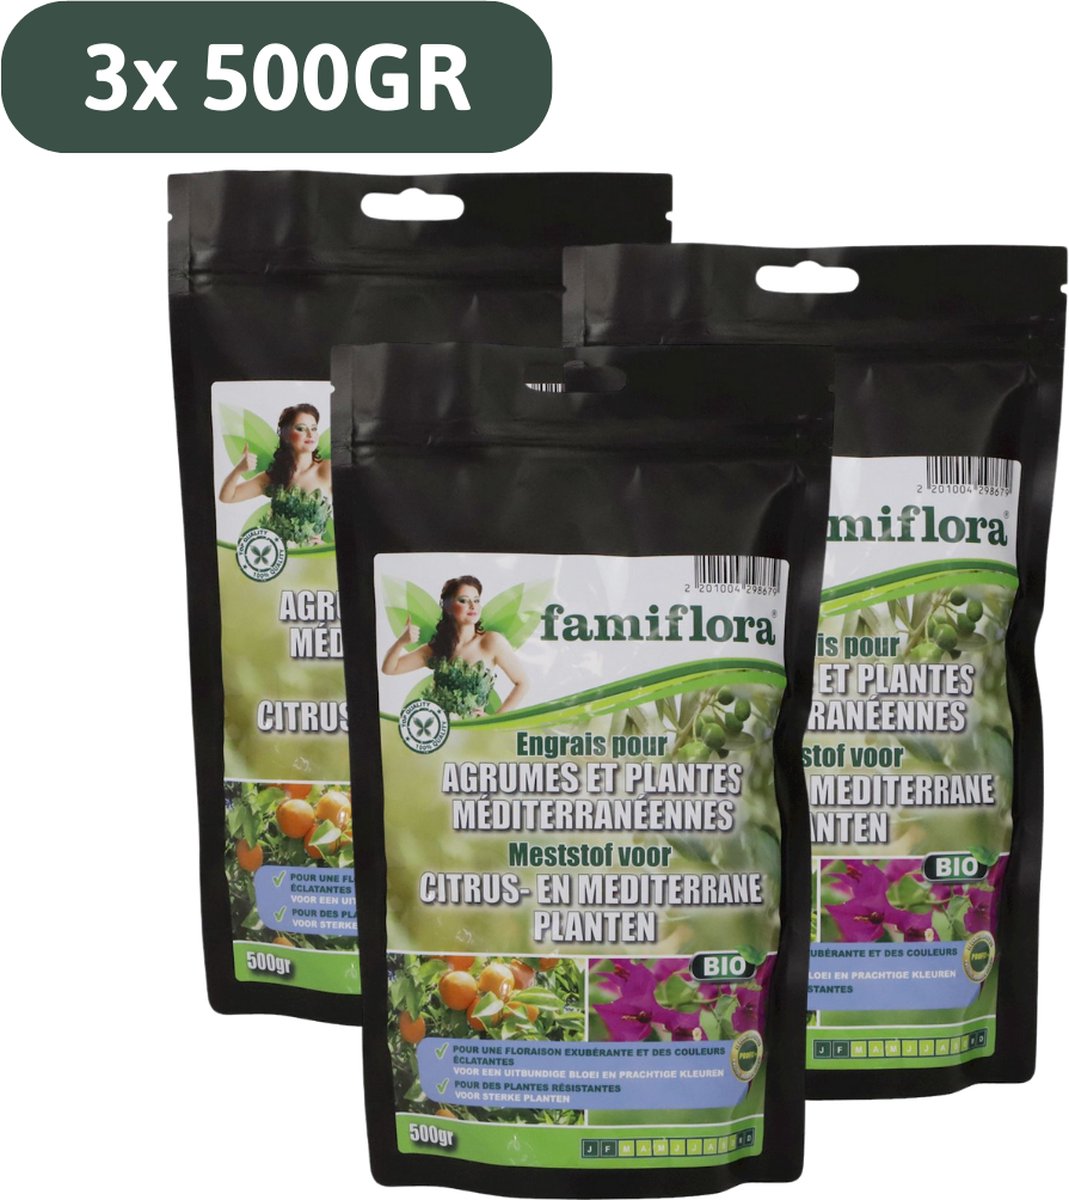 Famiflora meststof voor citrus en mediterrane planten - 1.5KG voor 15m² - Voor uitbundige bloei en prachtige kleuren bij sterke planten - Voordeelverpakking 3x 500gr